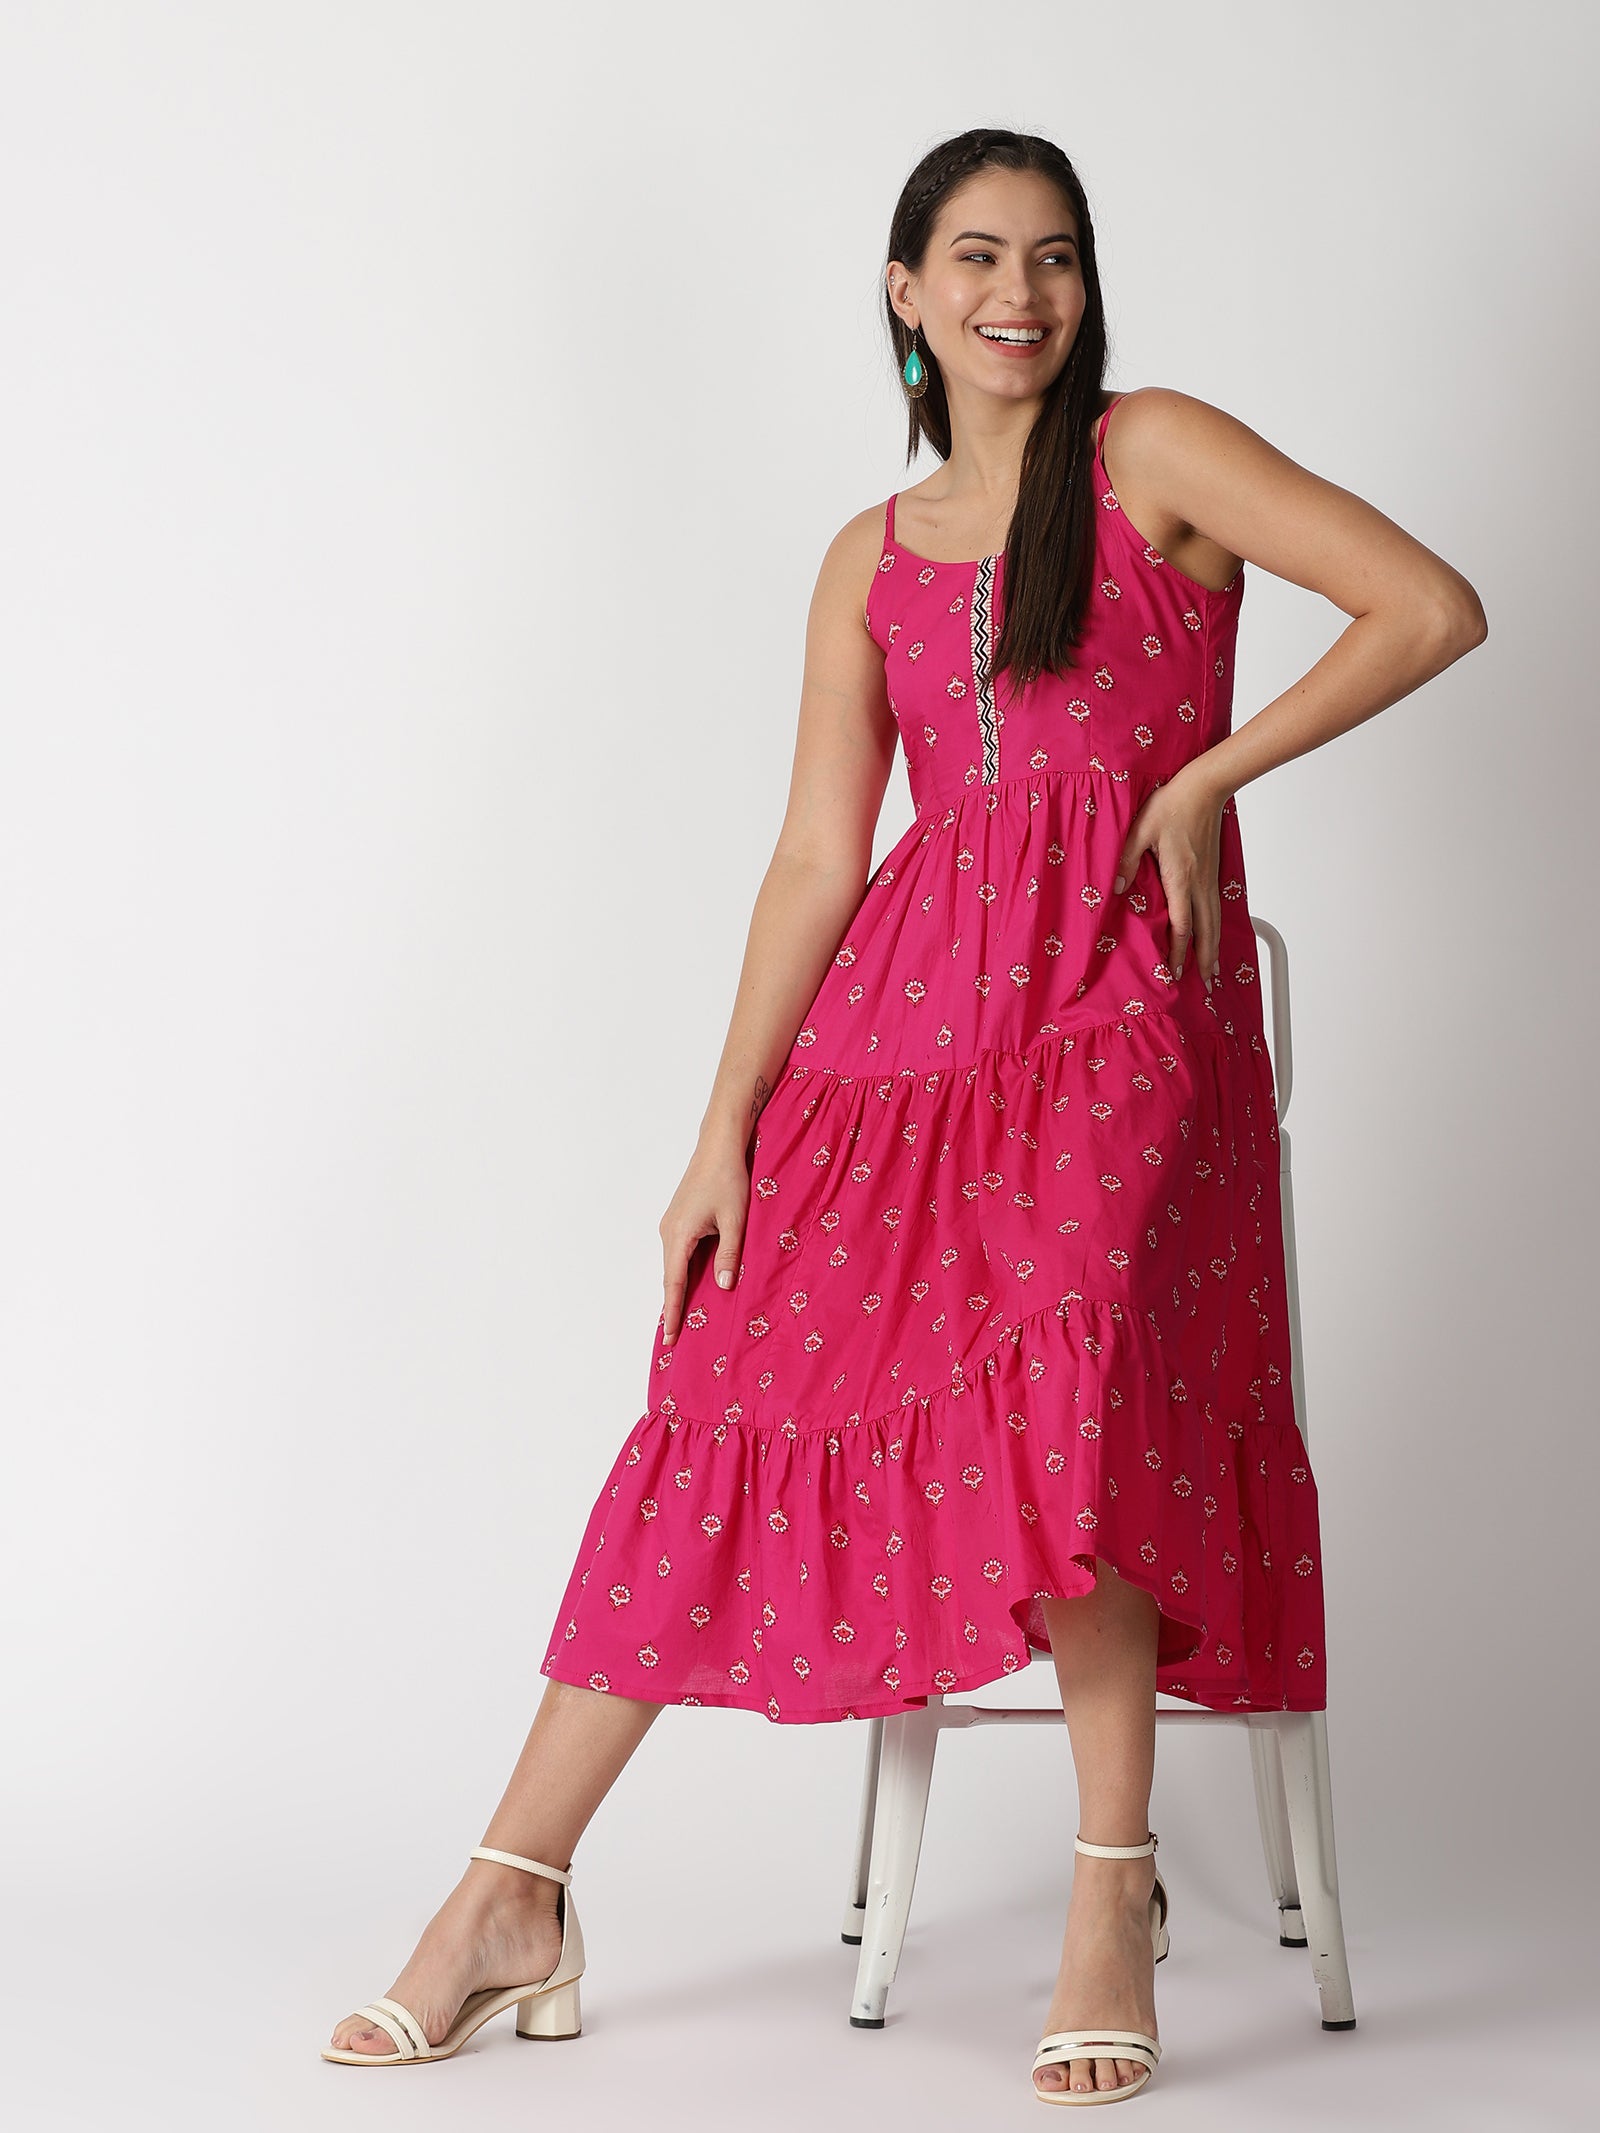 Blue Indian Wear Dress | Peppersleeve by BM Fabrics | One piece dress,  Indian wear, Piece dress